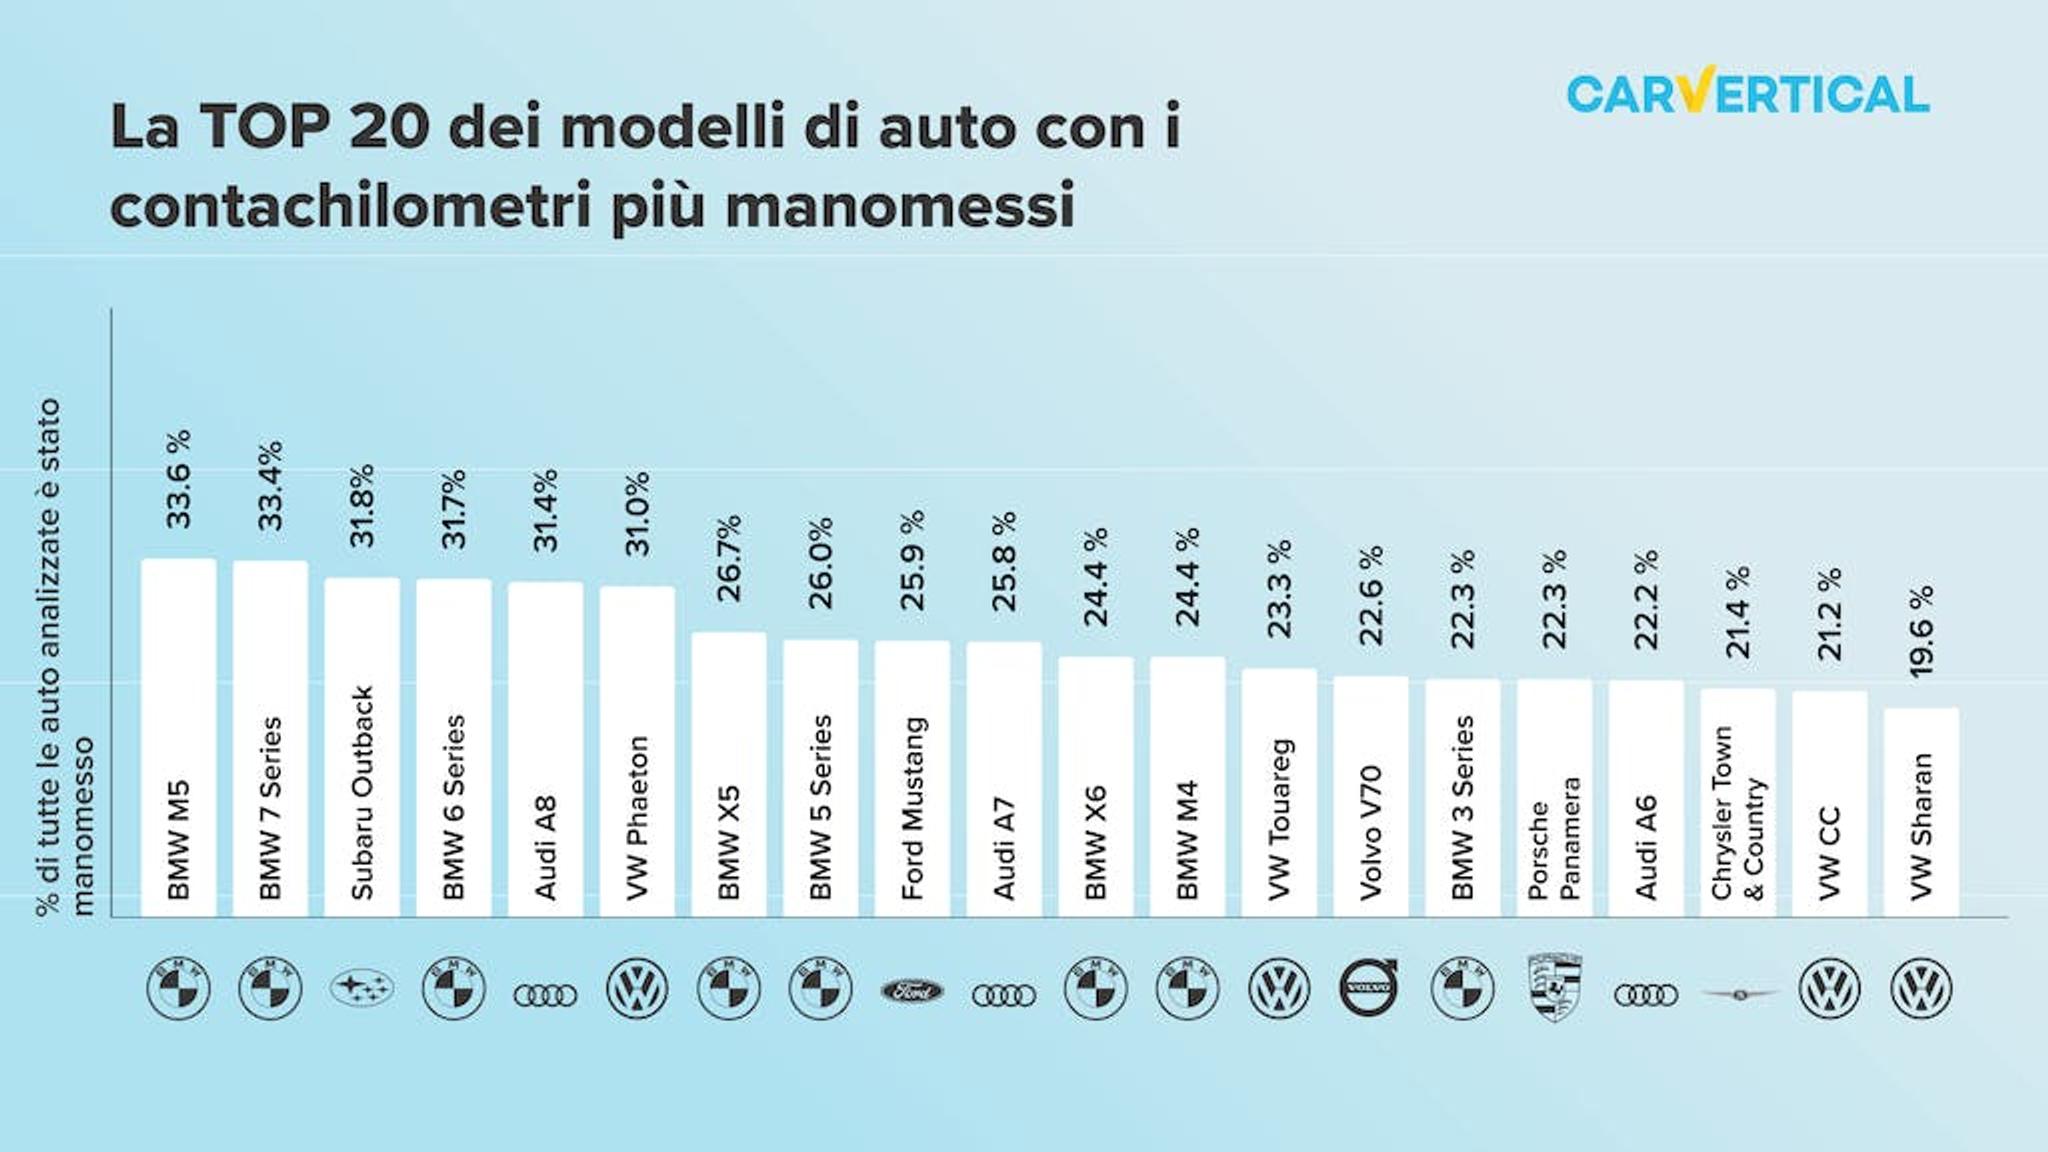 La TOP 20 dei modelli di auto con i contachilometri piu manomessi